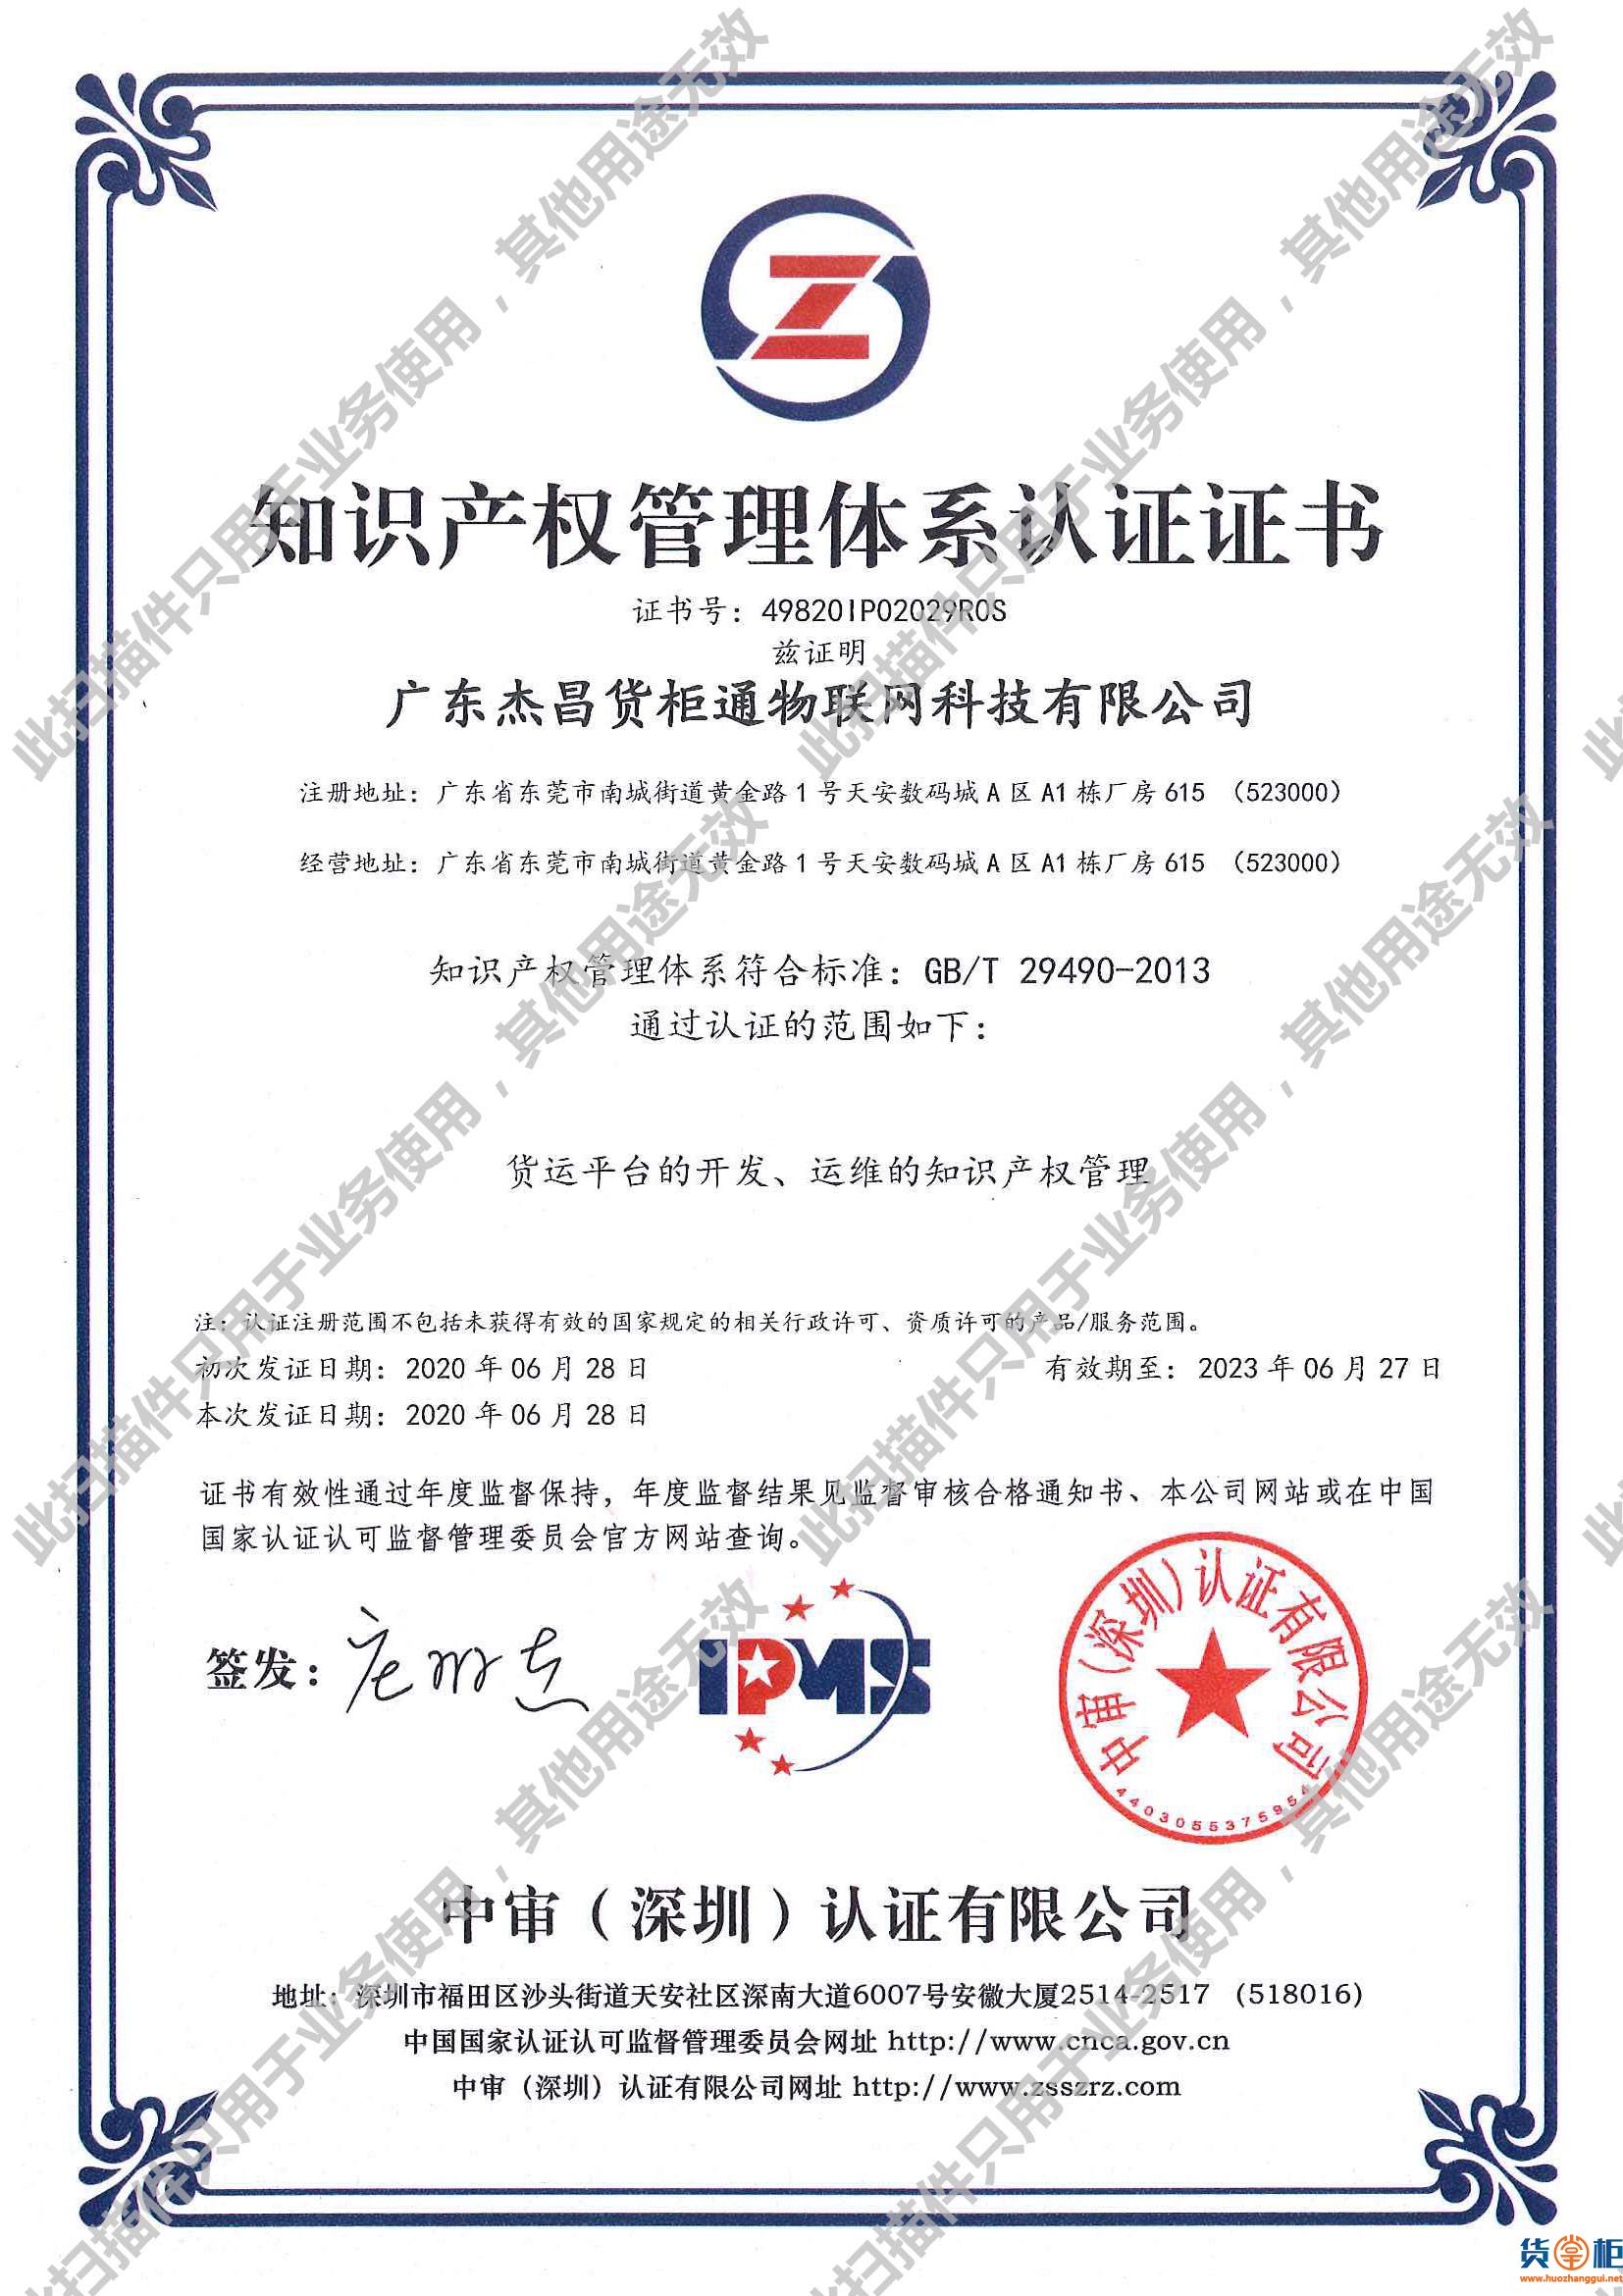 货掌柜获得"知识产权管理体系认证"